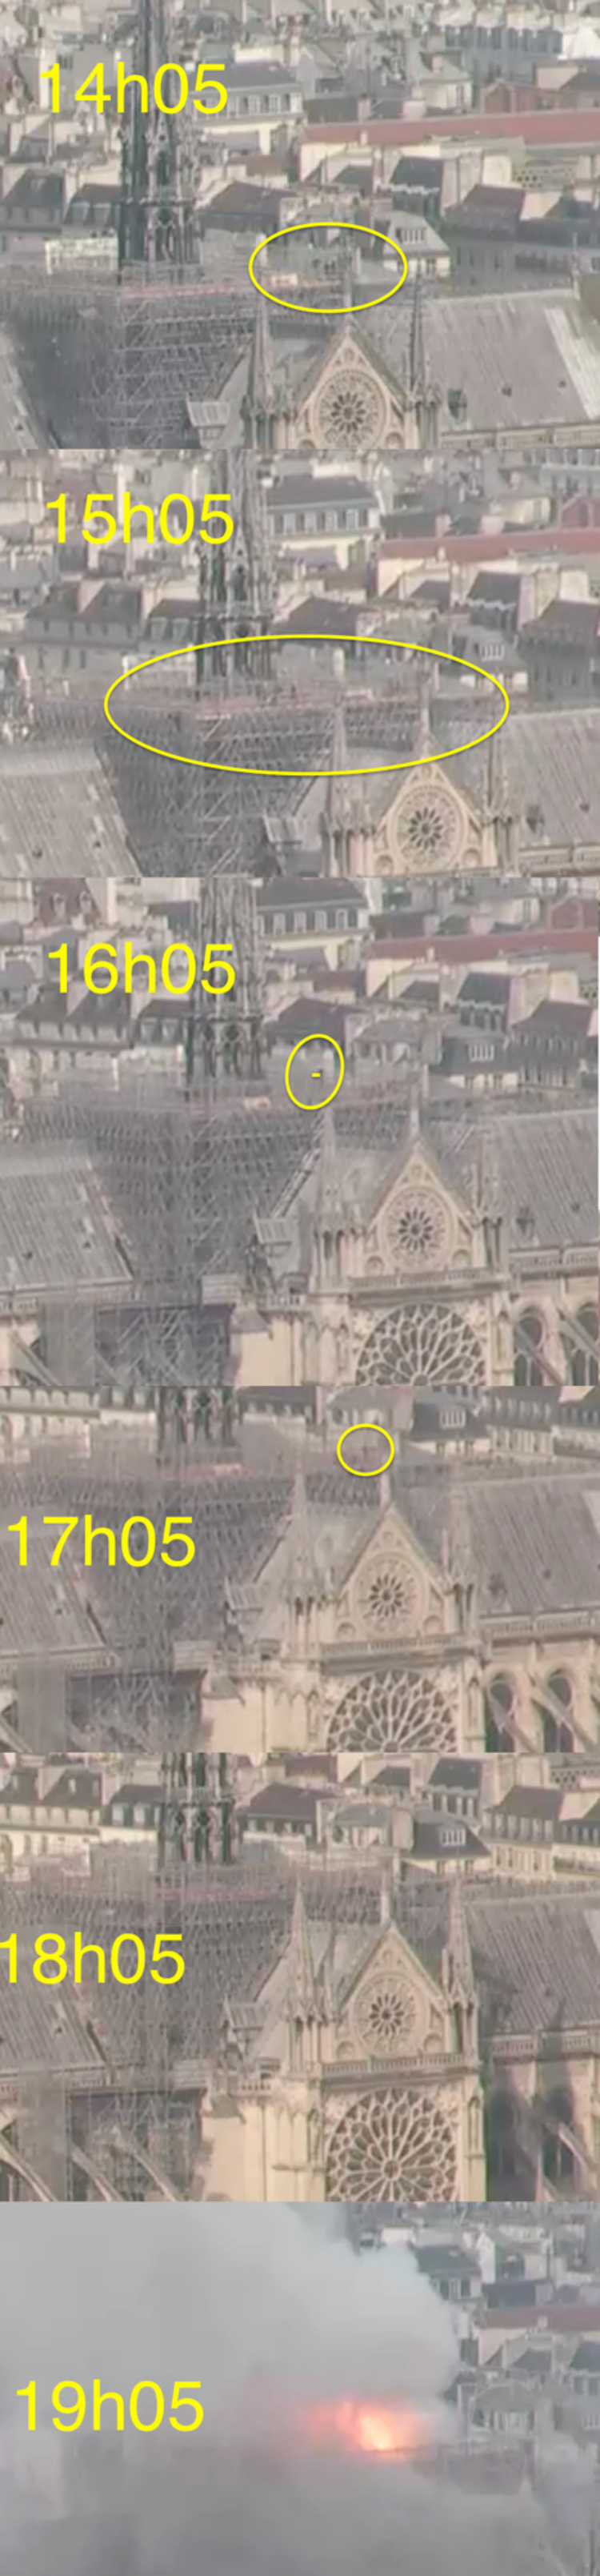 Incendie de Notre-Dame de Paris  - Page 12 12124710